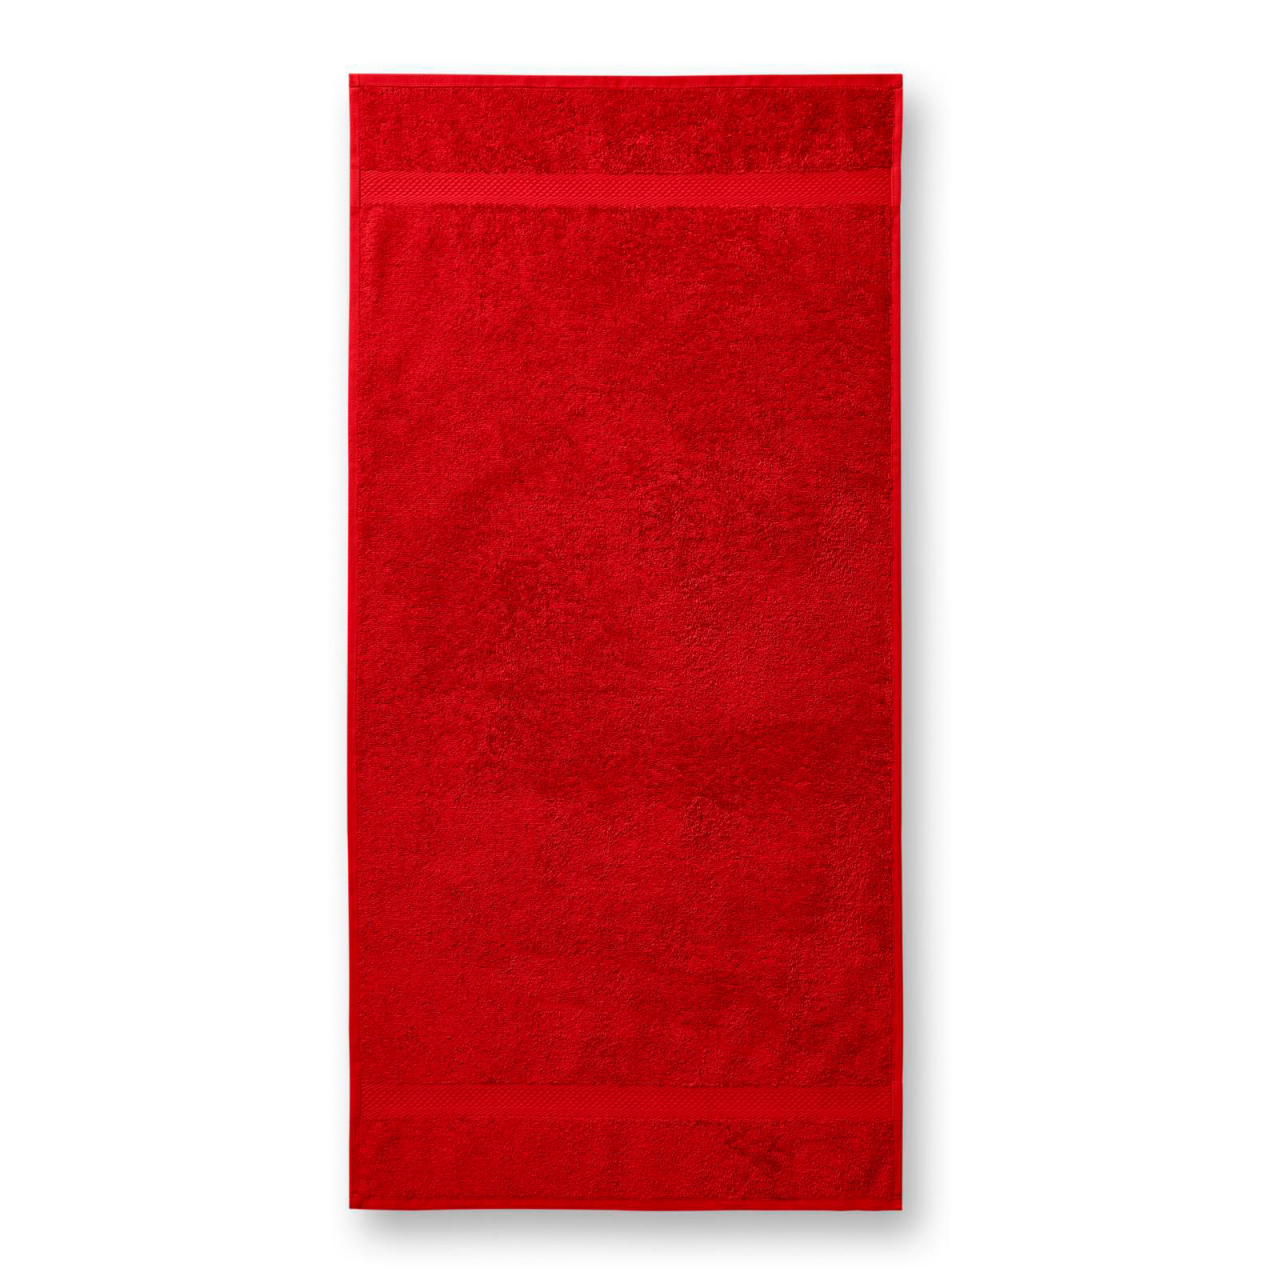 Ručník unisex Malfini Terry Towel - červený, 50x100